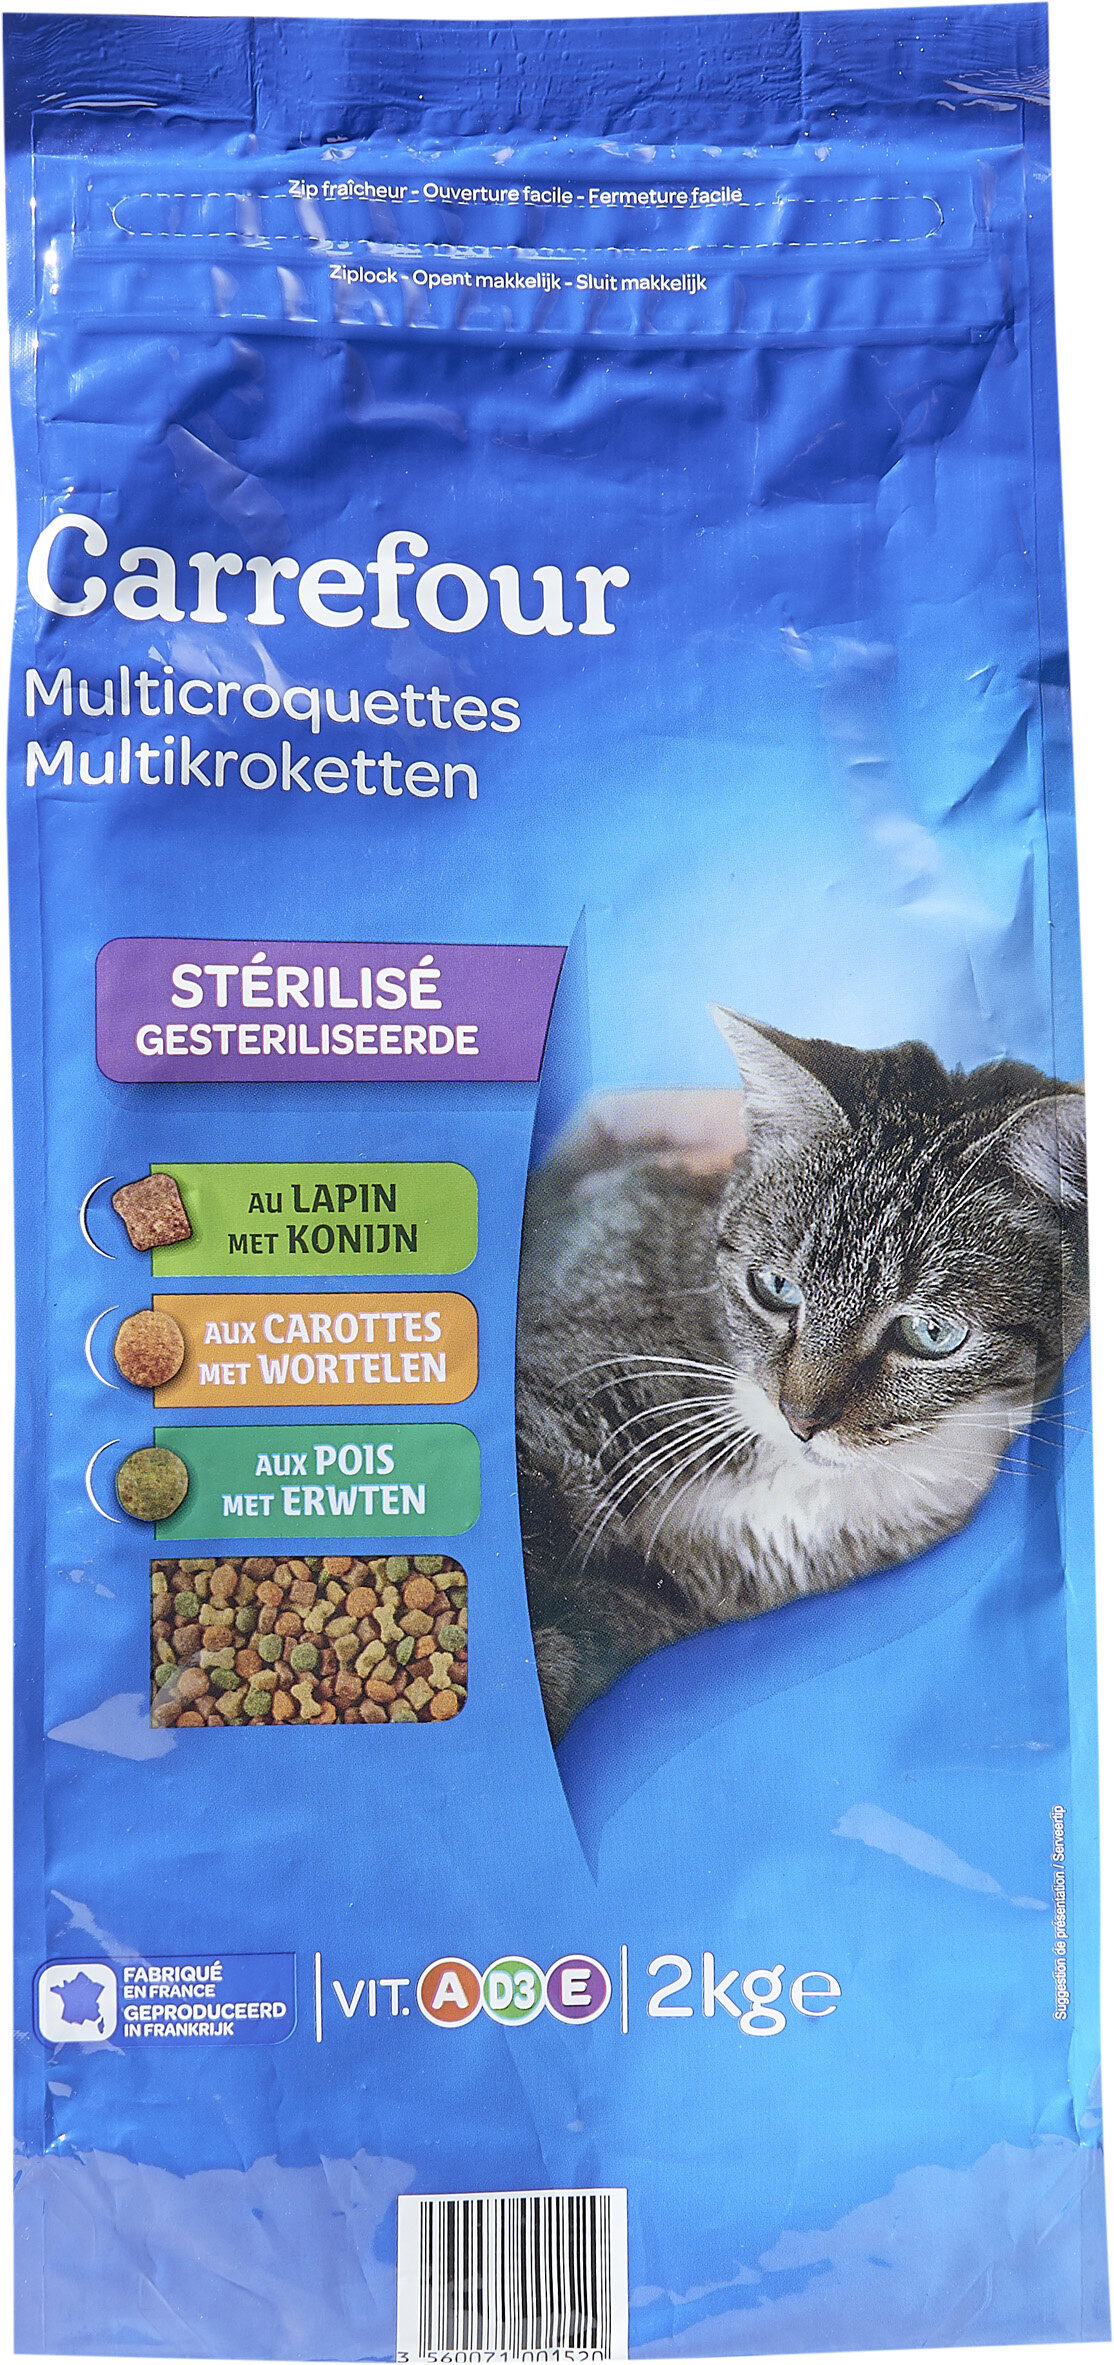 Multicroquettes Stérilisé - Produit - fr